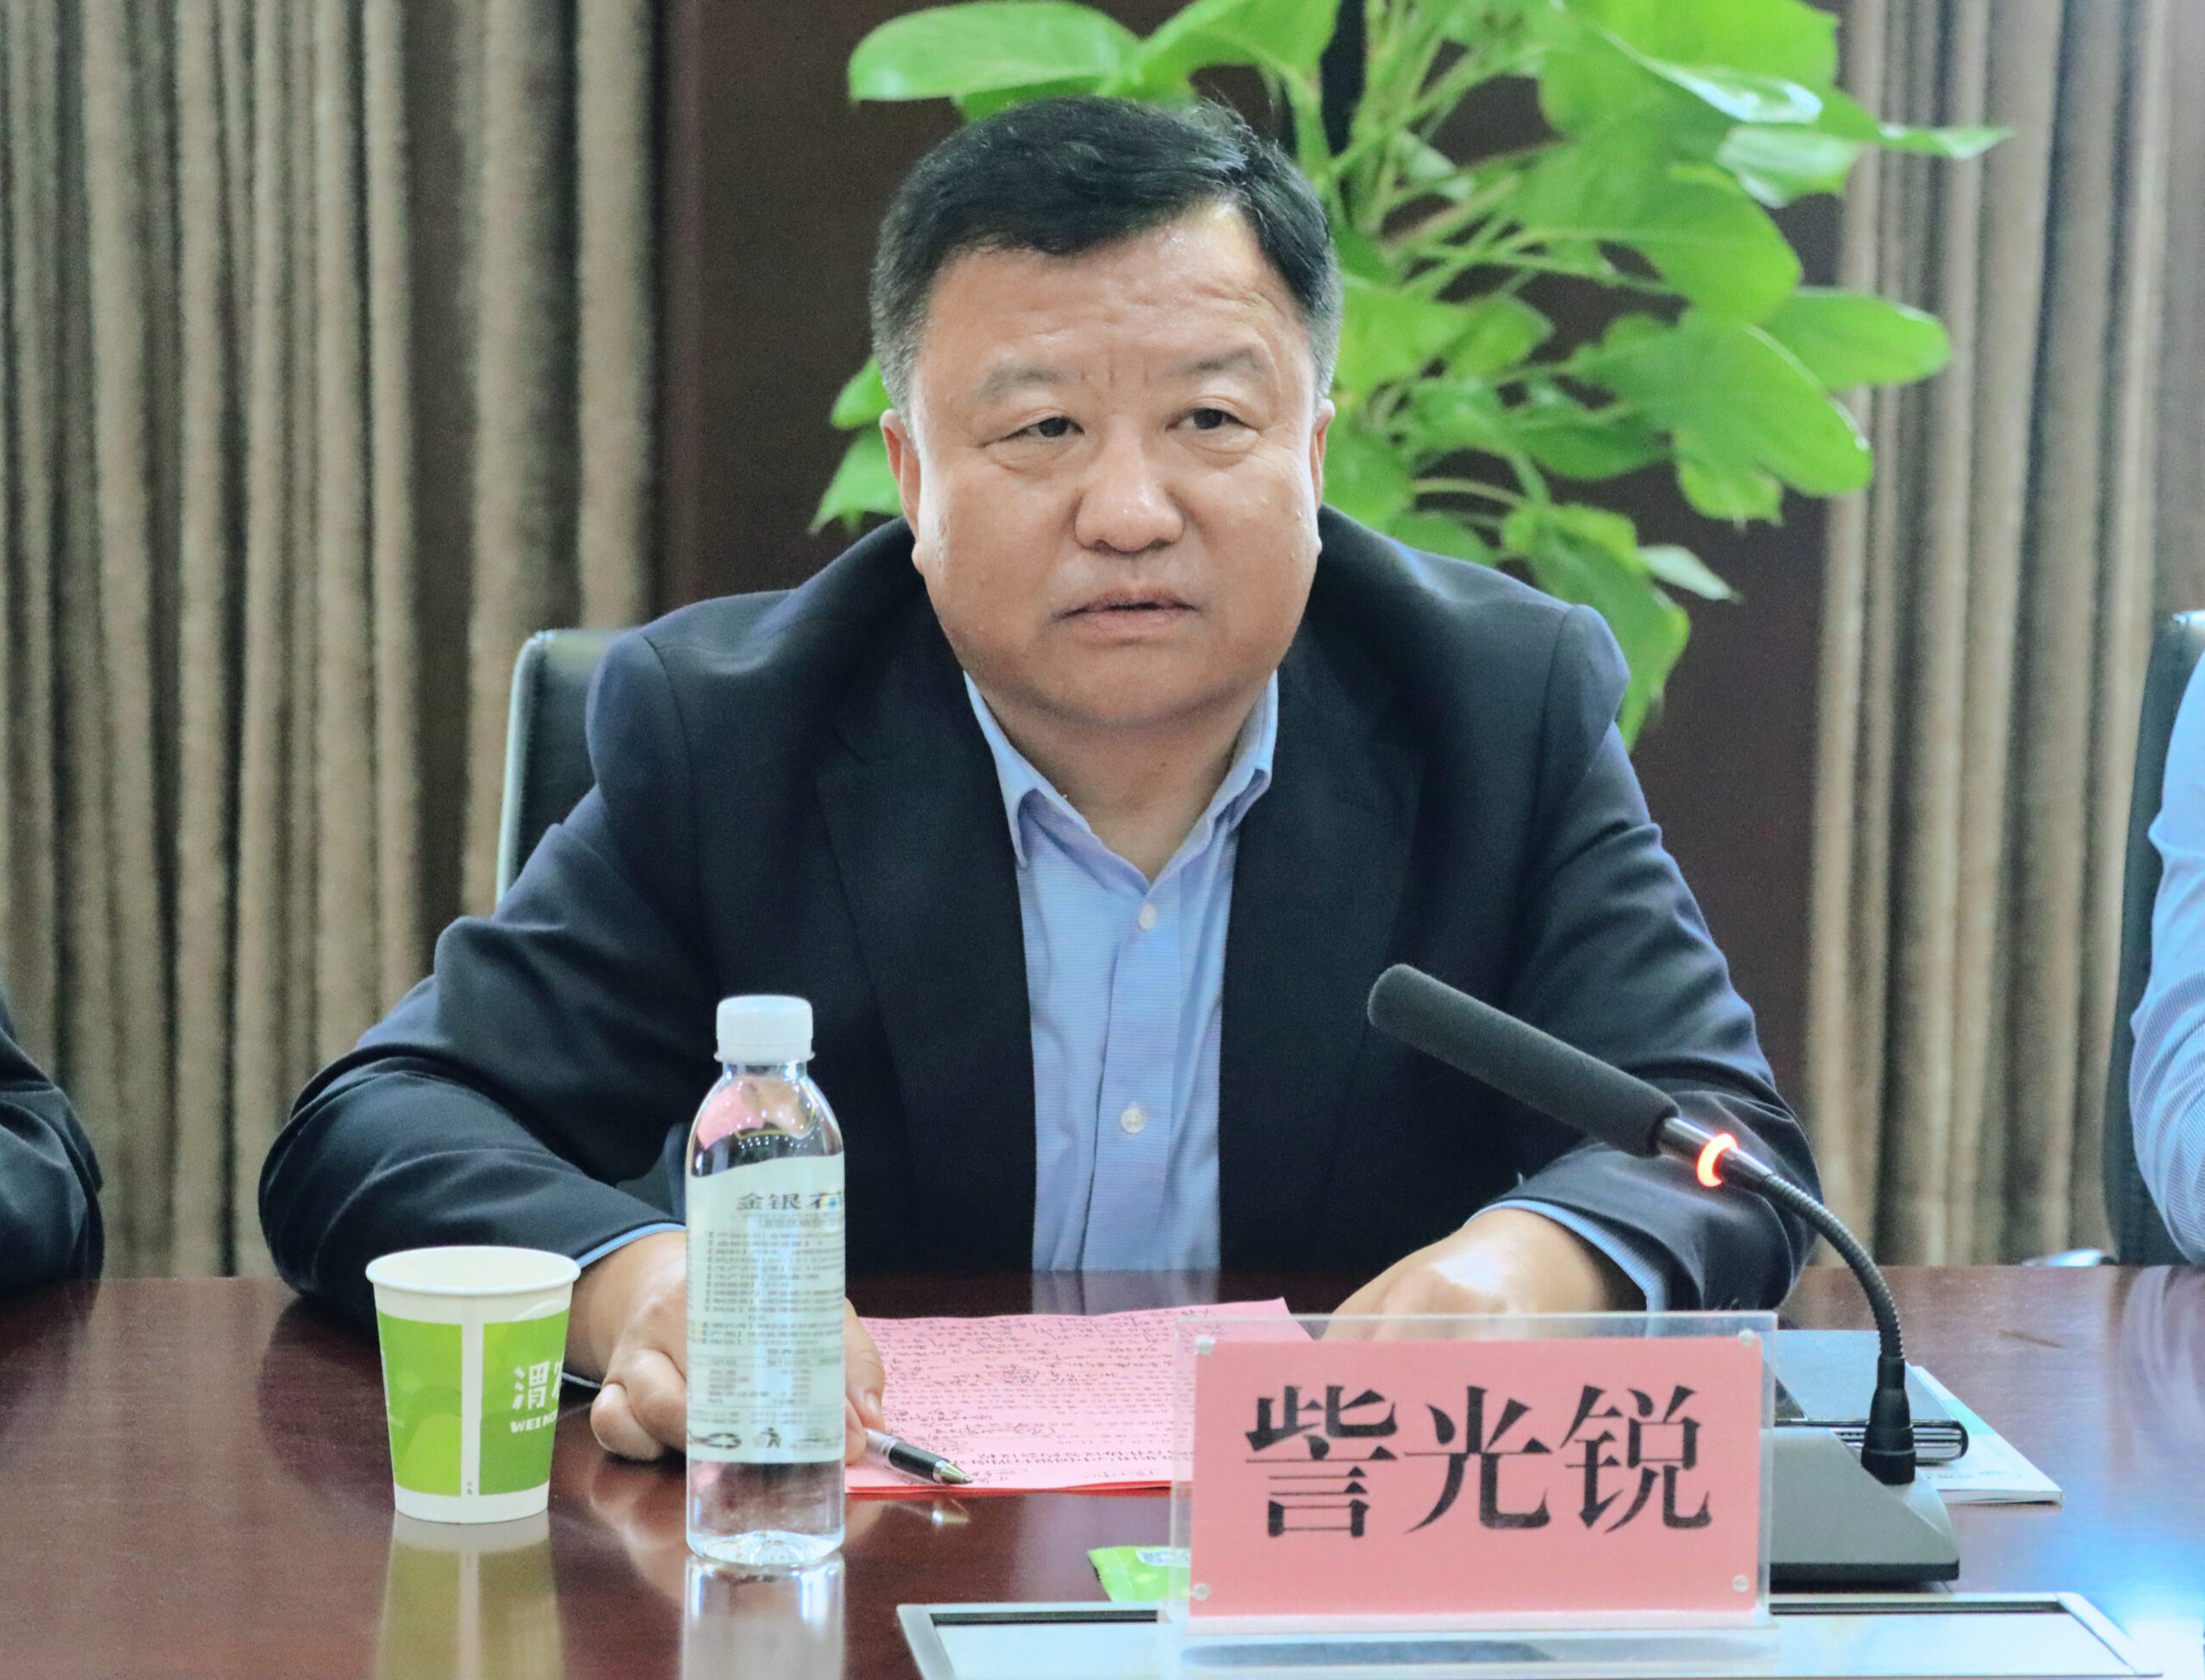 渭南农投集团与中行渭南分行签署银企战略合作协议